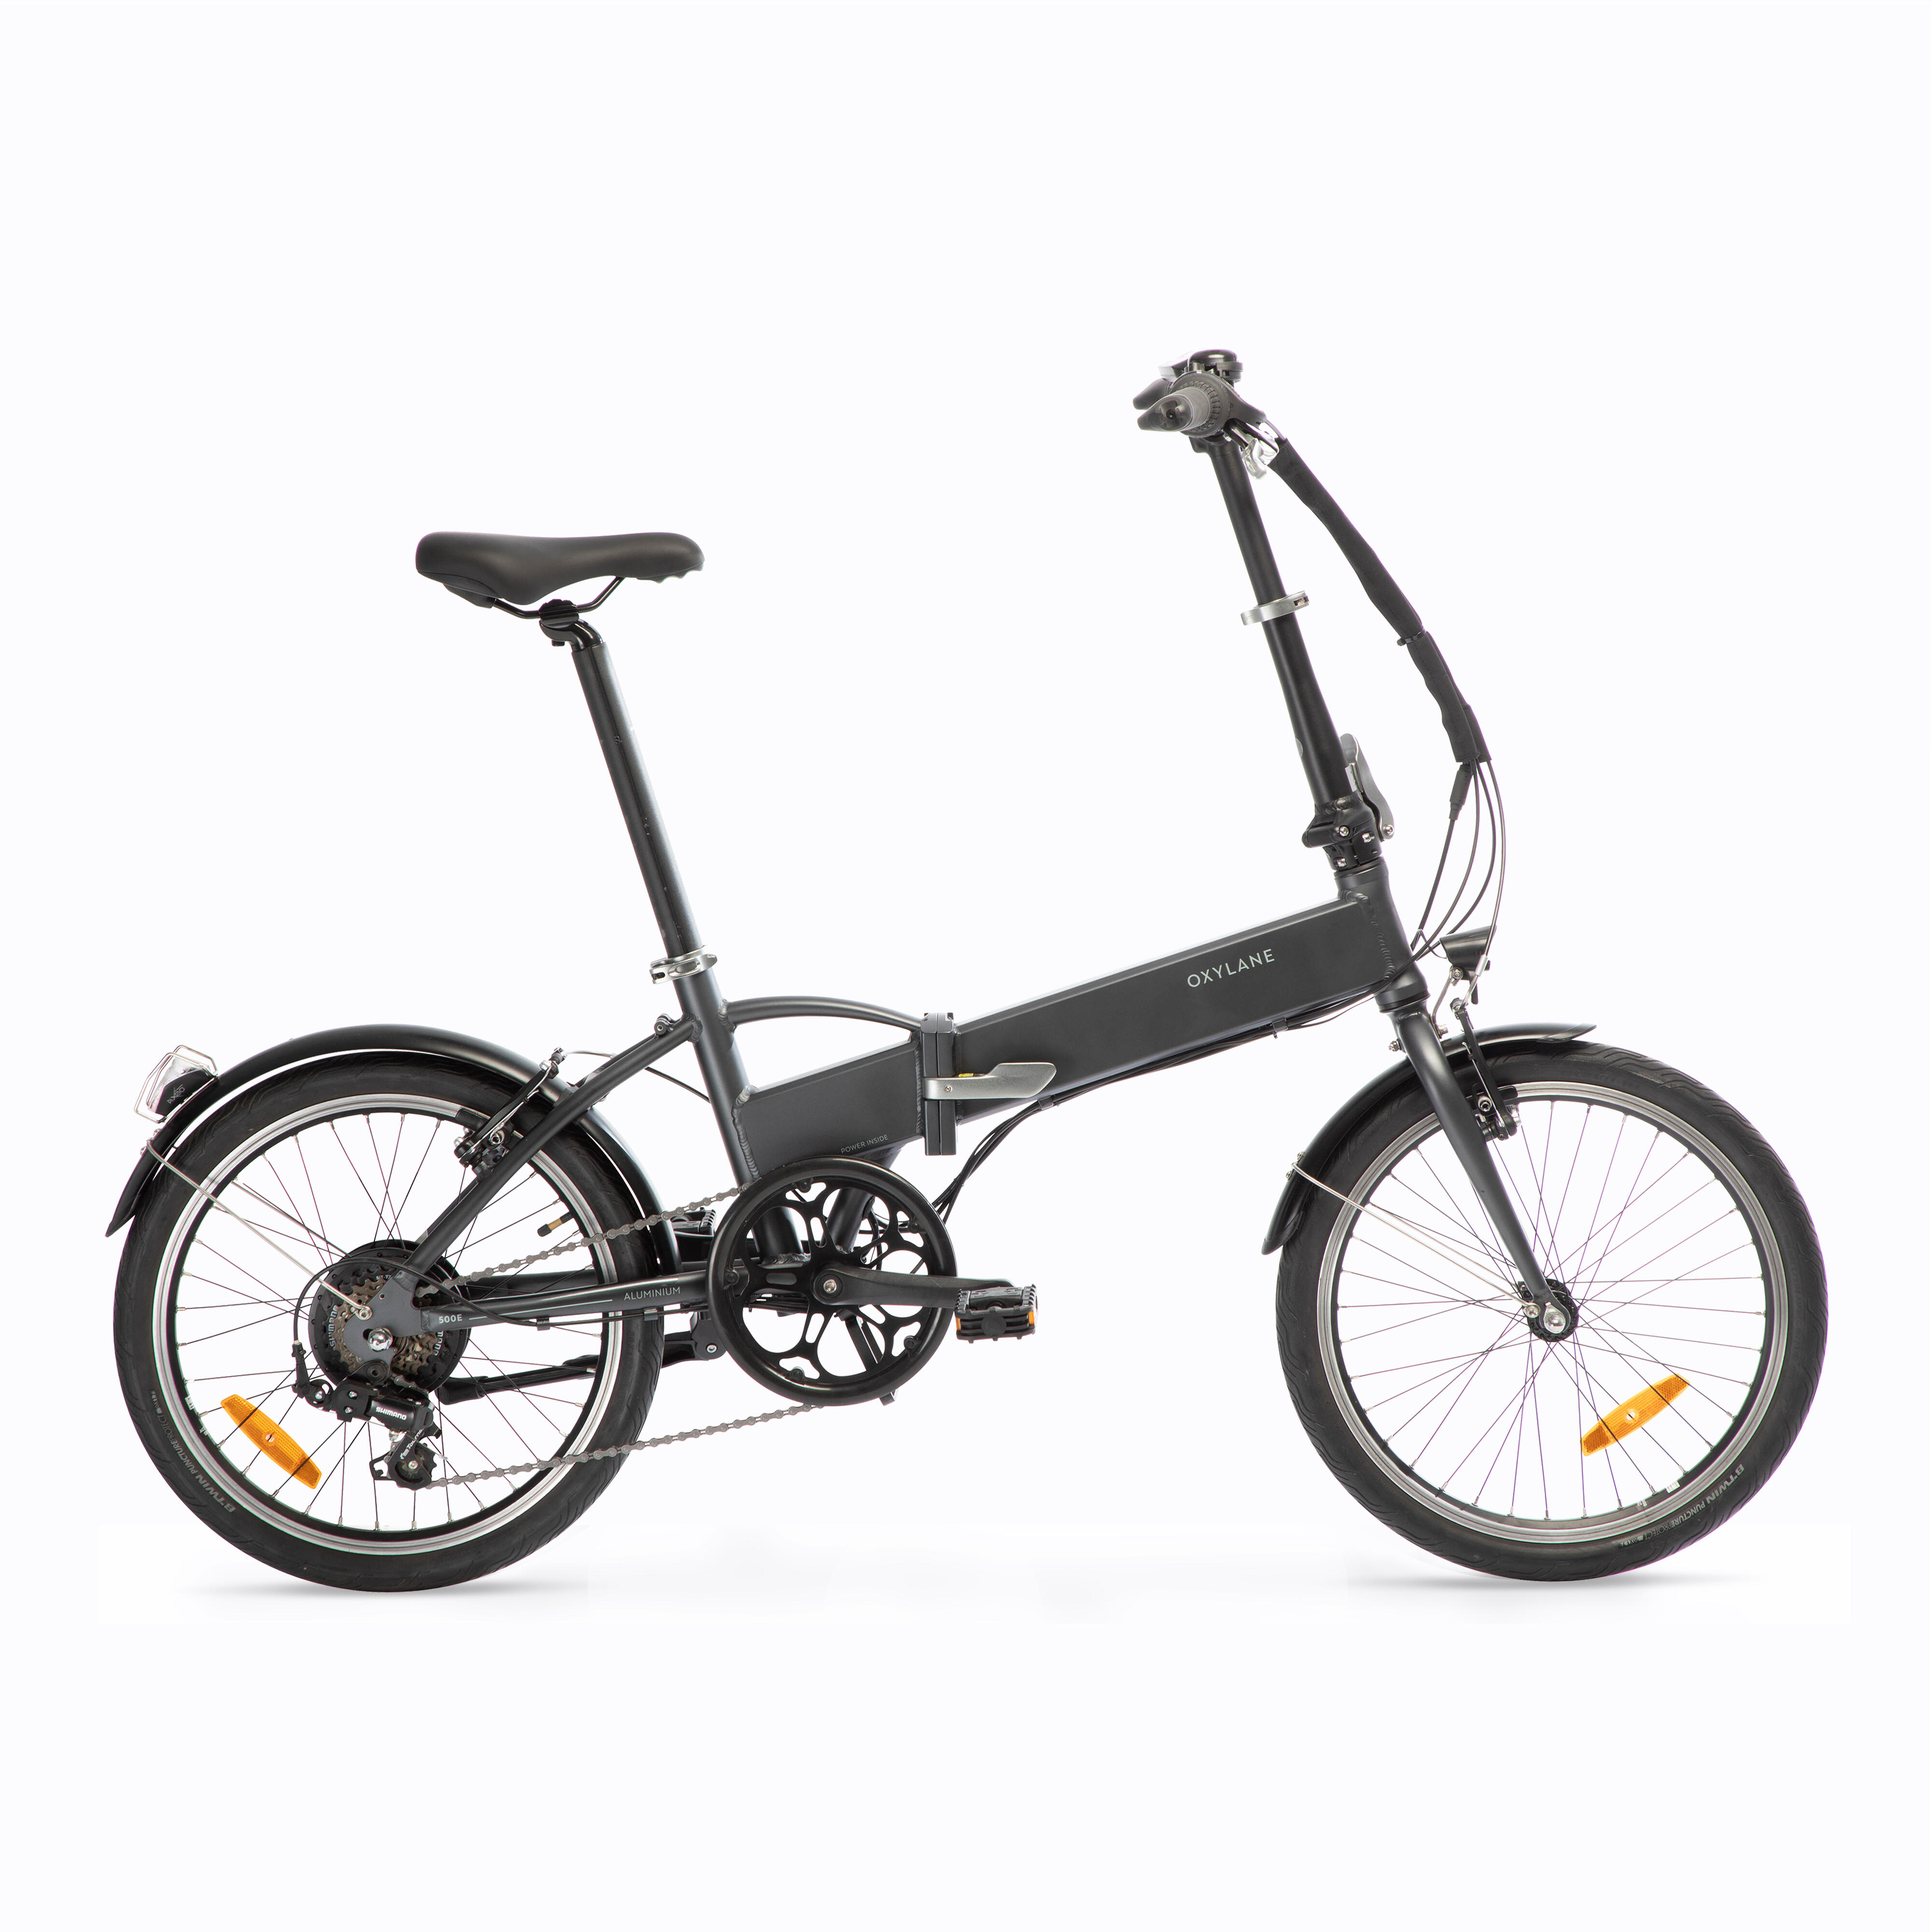 Bicicletă pliabilă cu asistență electrică TILT 500 E Gri-Negru BTWIN imagine 2022